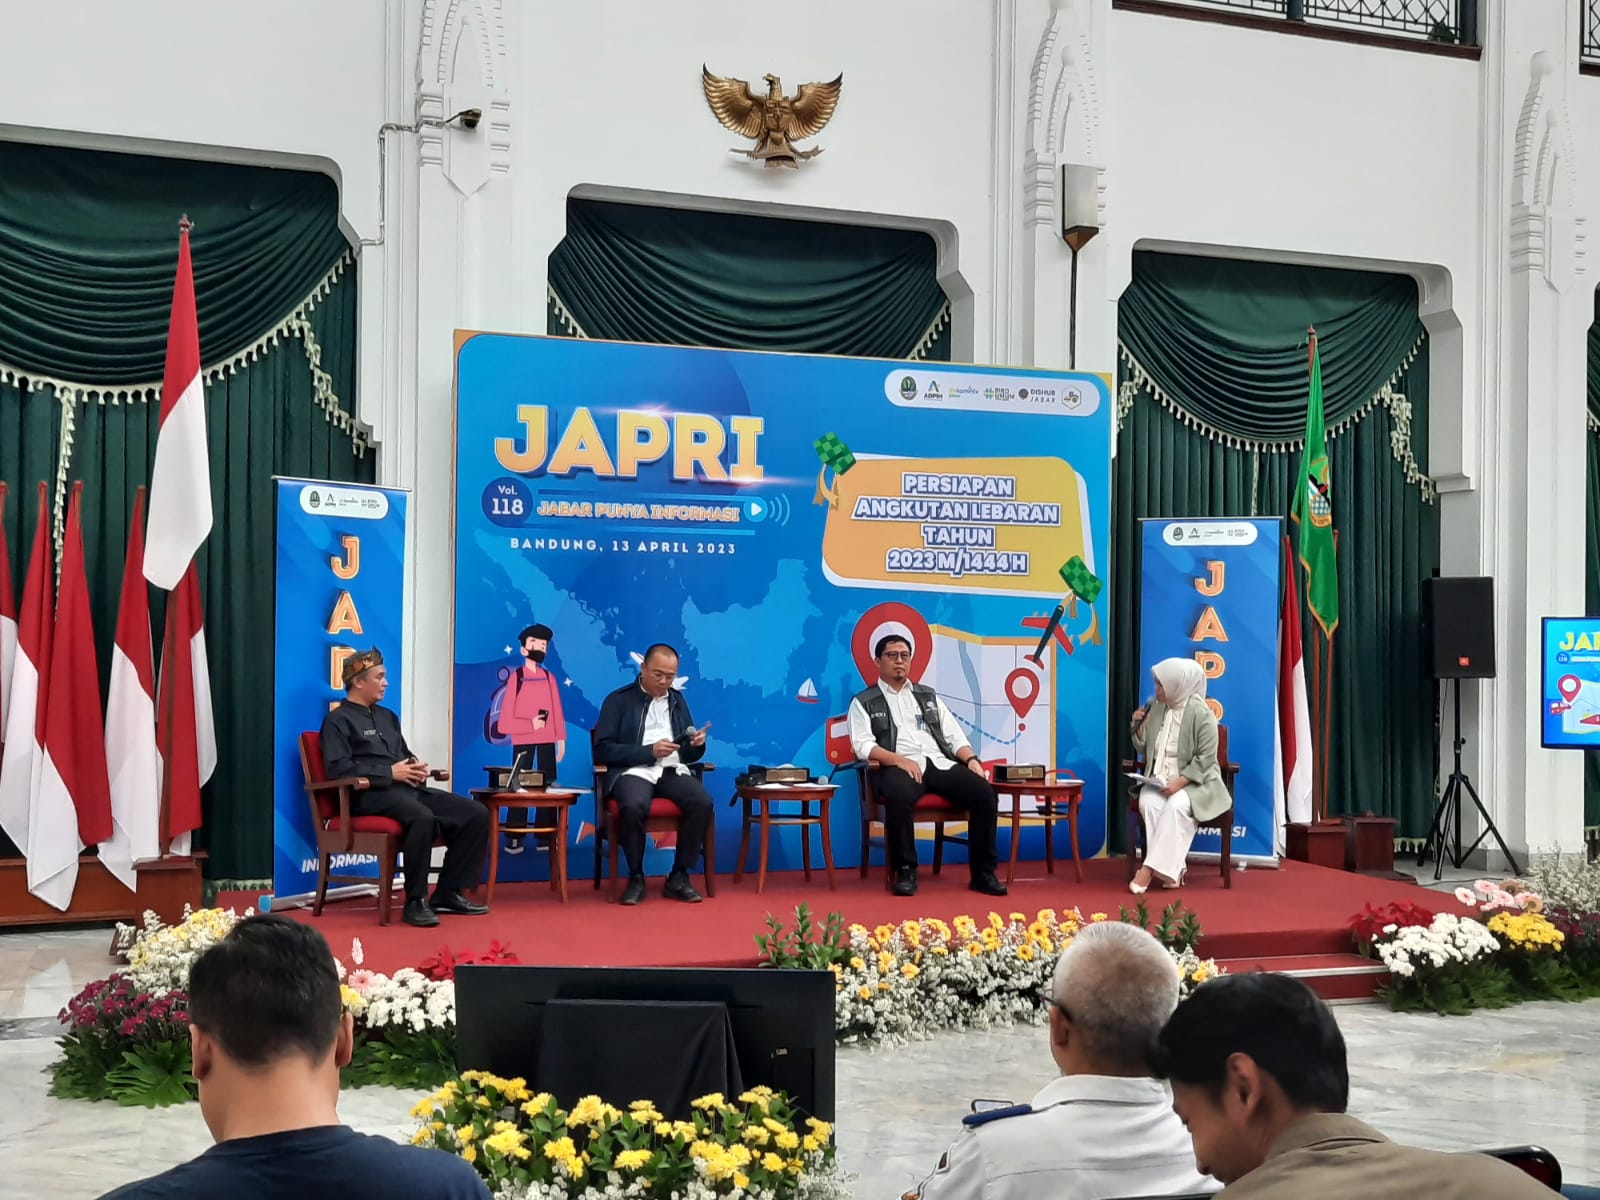 Acara JAPRI (Jabar Punya Informasi) di Gedung Sate, Kota Bandung, Kamis (13/4/2023). Foto : Humas Jabar